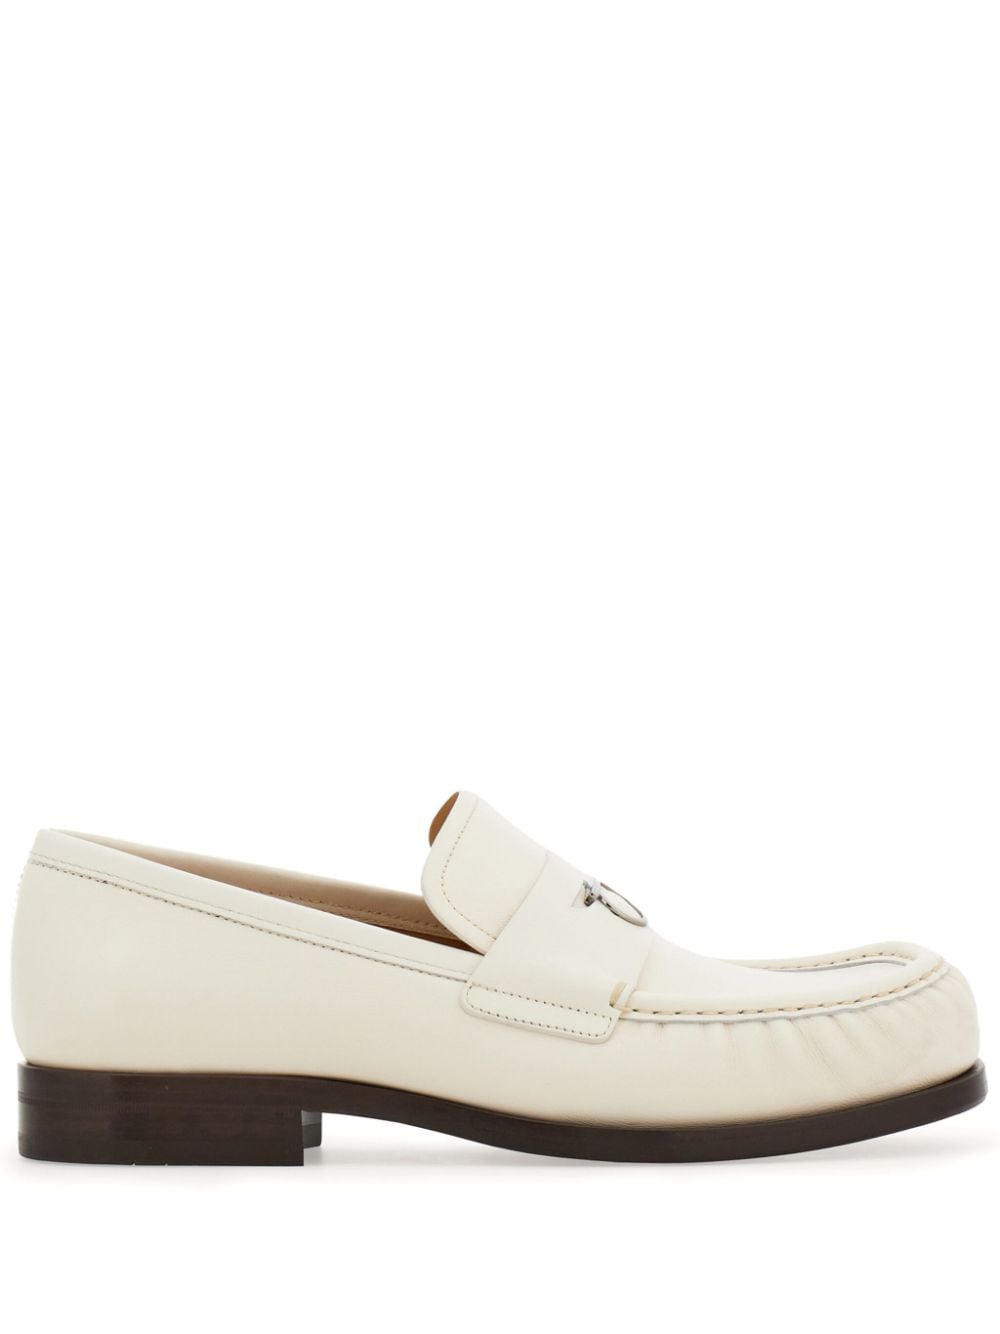 Ferragamo Gancini-plaque leather loafers - White von Ferragamo